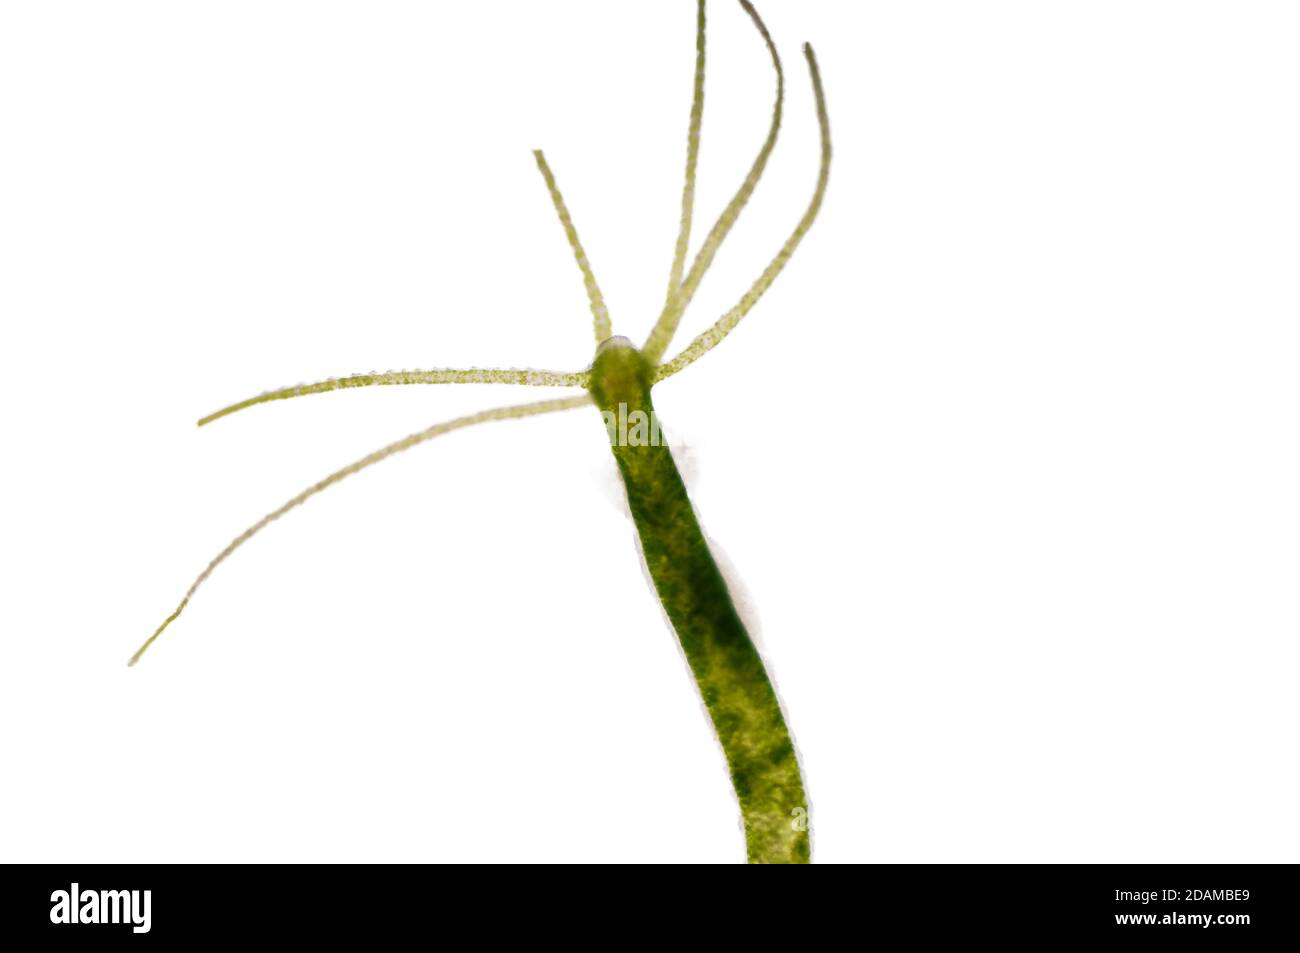 Hydra, micrografia leggera. Hydra sono piccoli animali d'acqua dolce del phylum Cnidaria e della classe Hydrozoa. Foto Stock